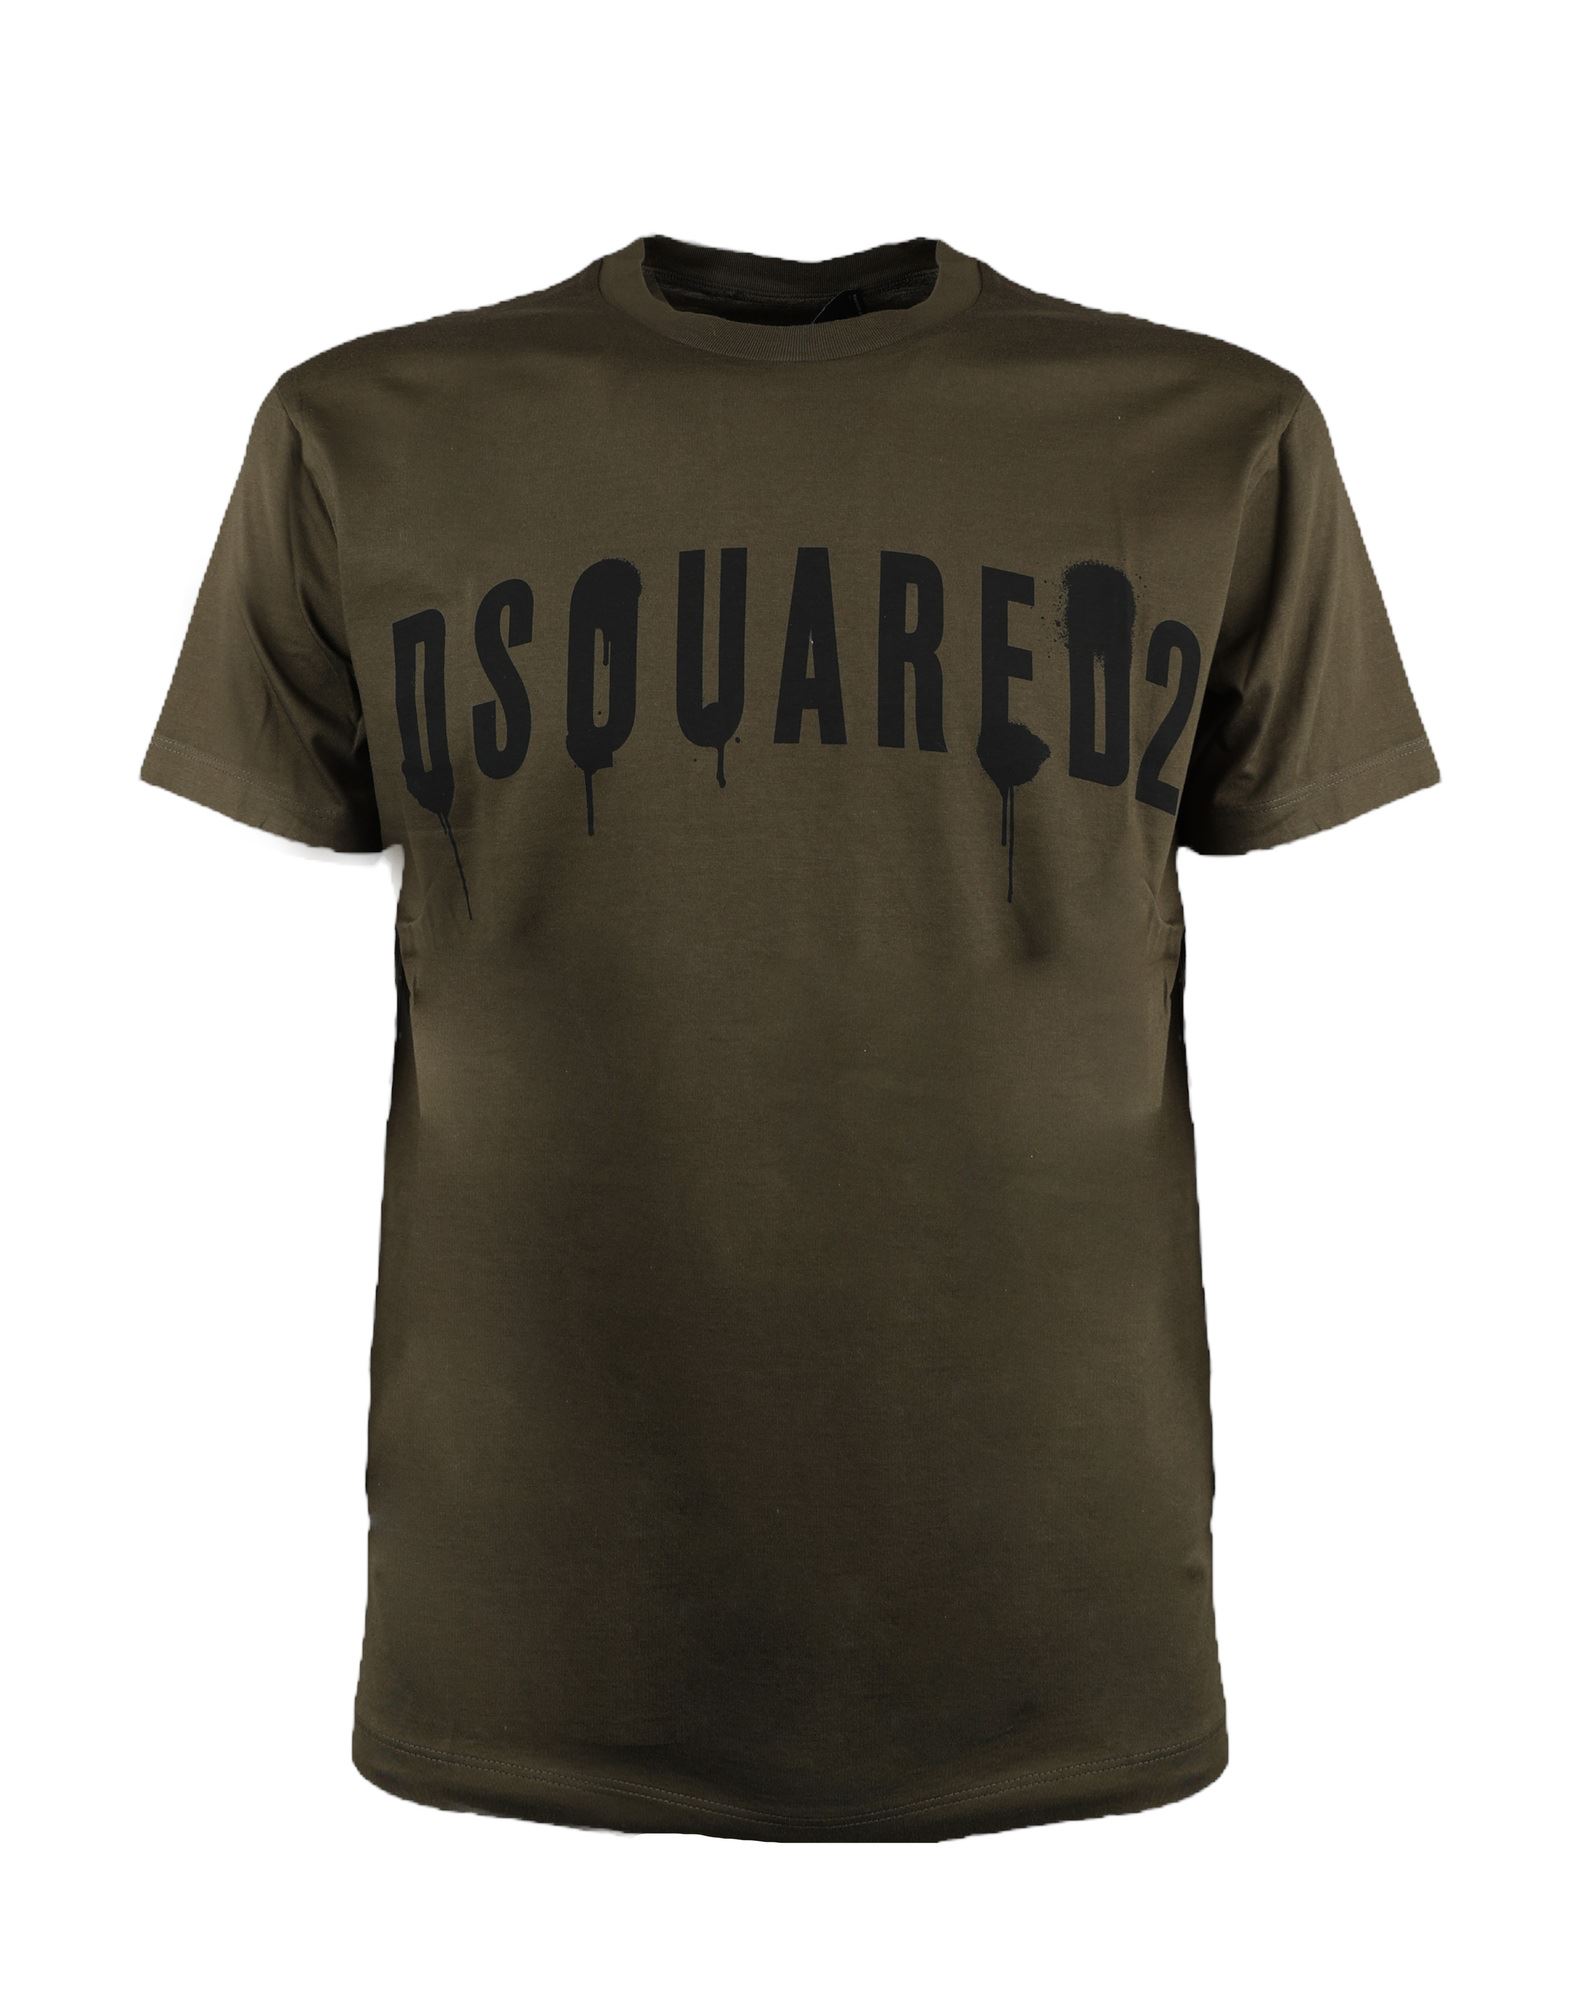 DSQUARED2 T-shirts Herren Grün von DSQUARED2